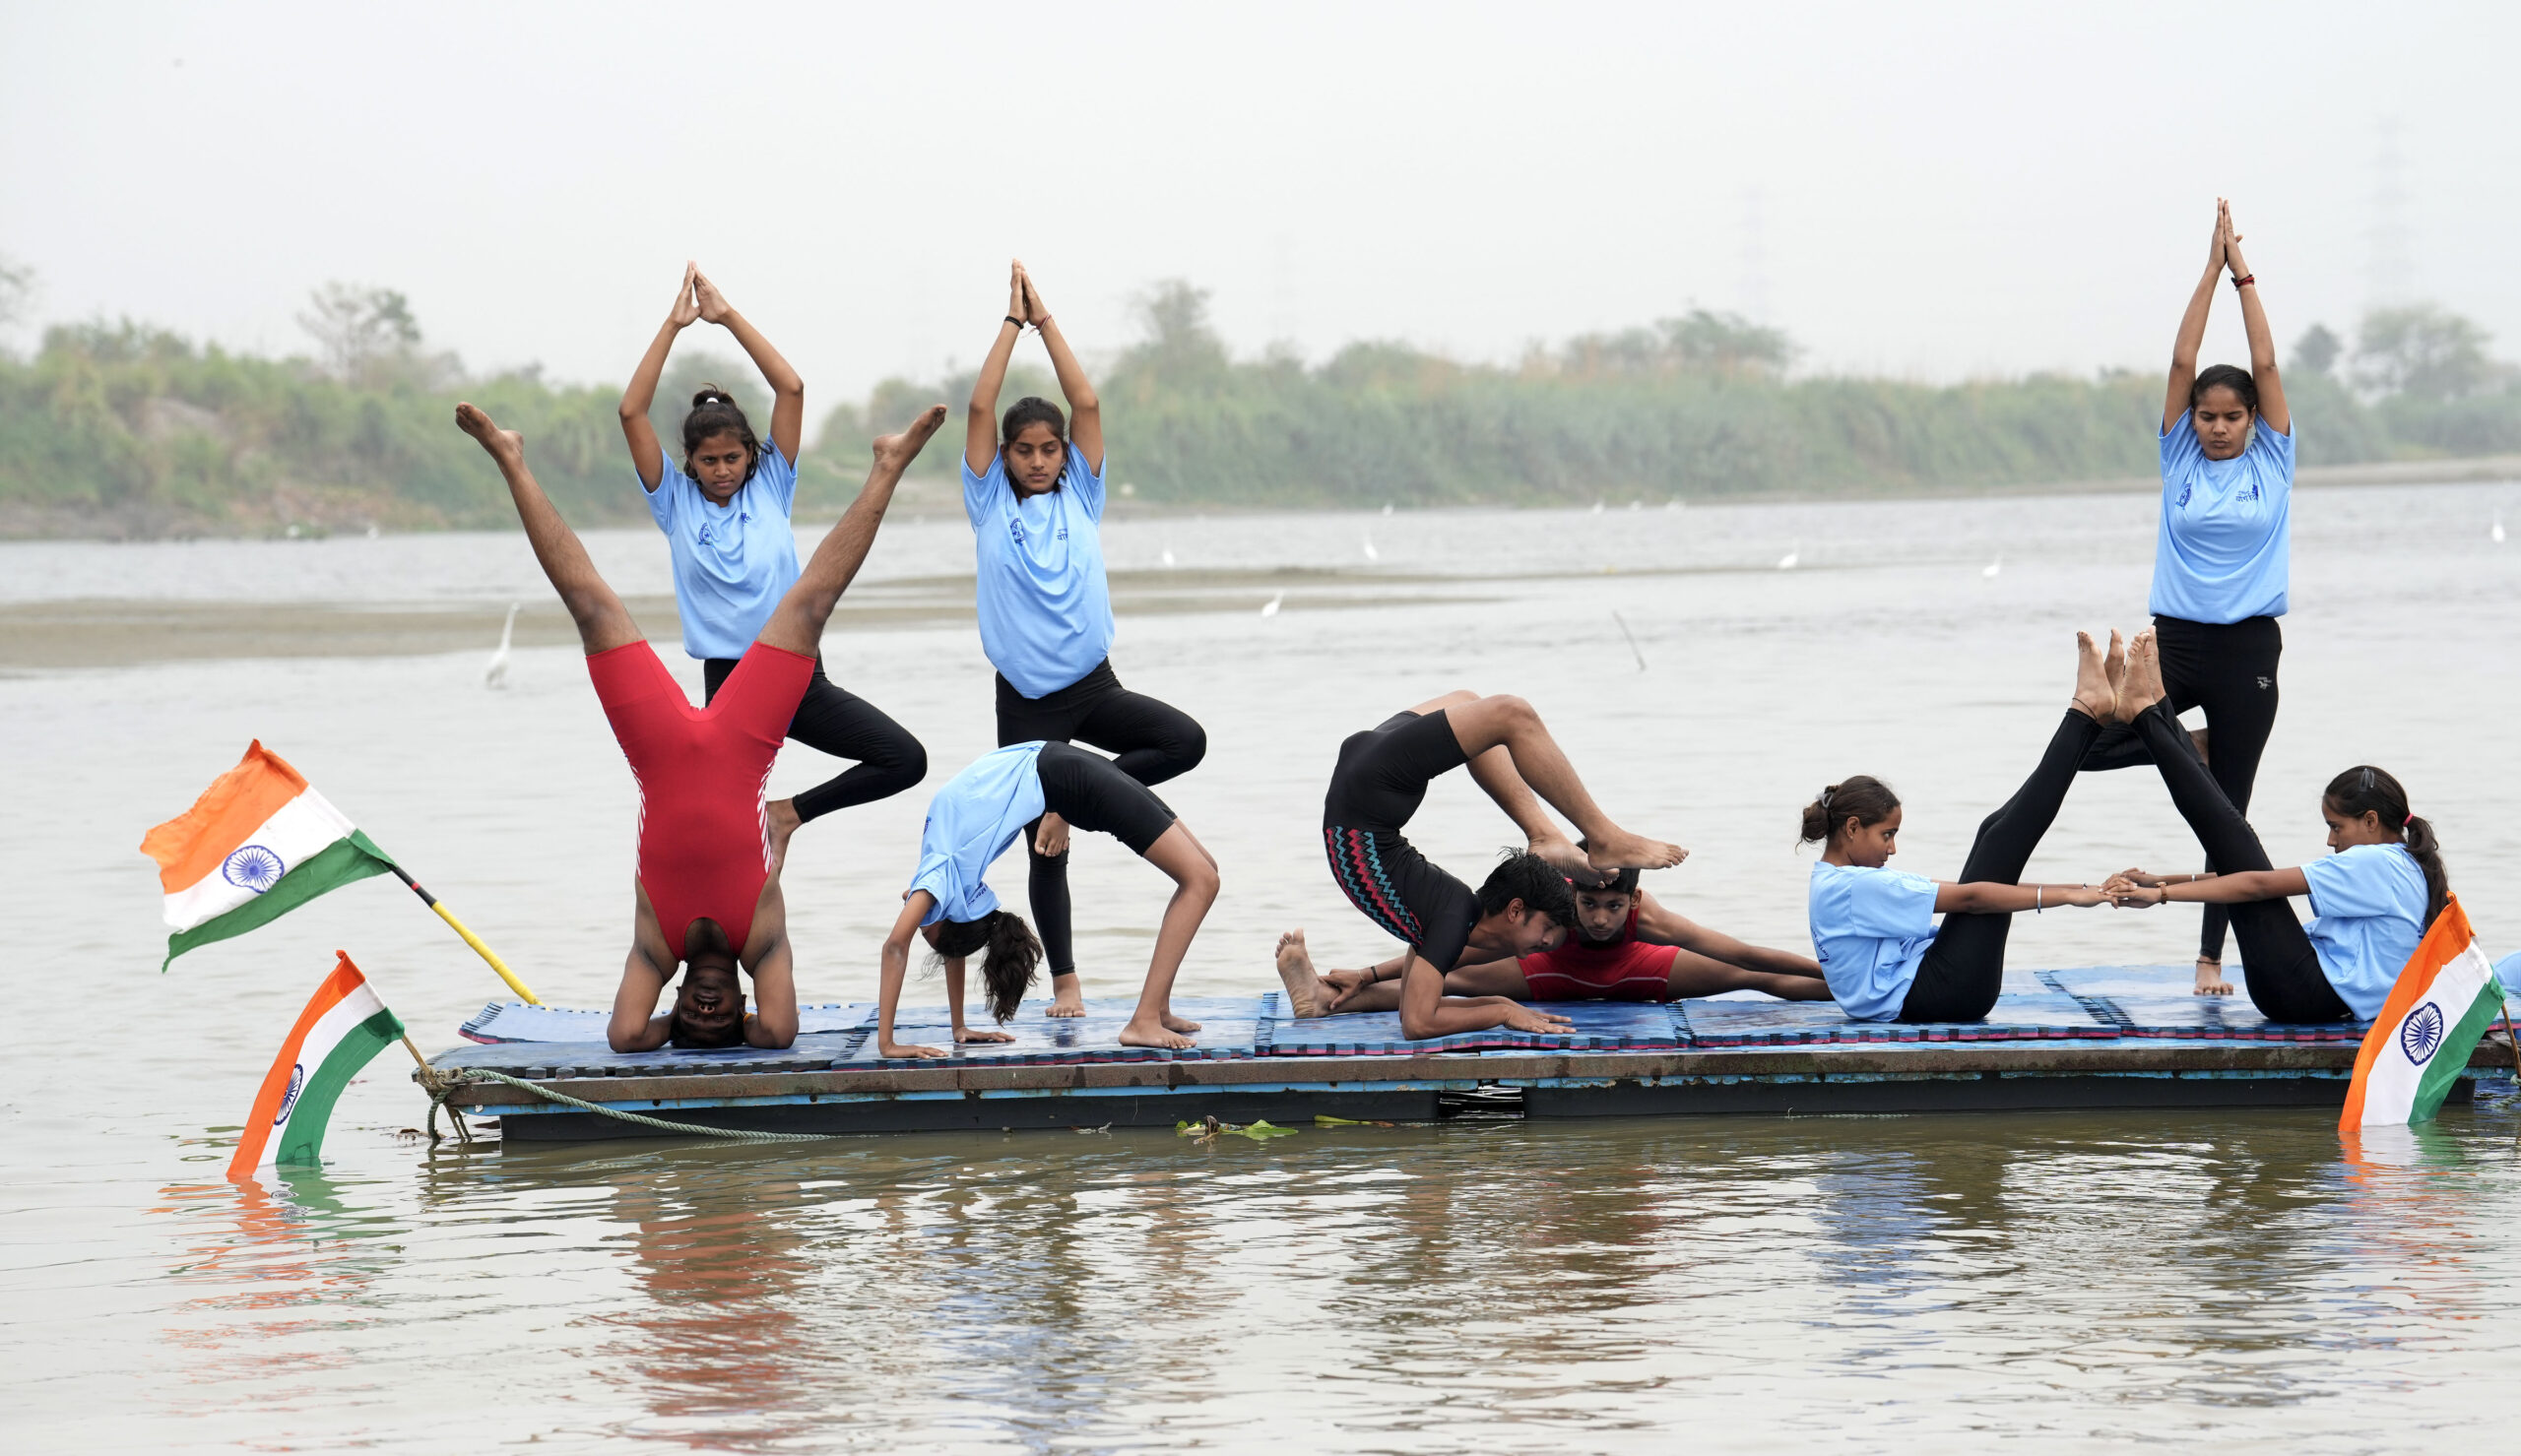 उप्र : अंतरराष्ट्रीय योग दिवस पर लोगों ने यमुना नदी में किया योग